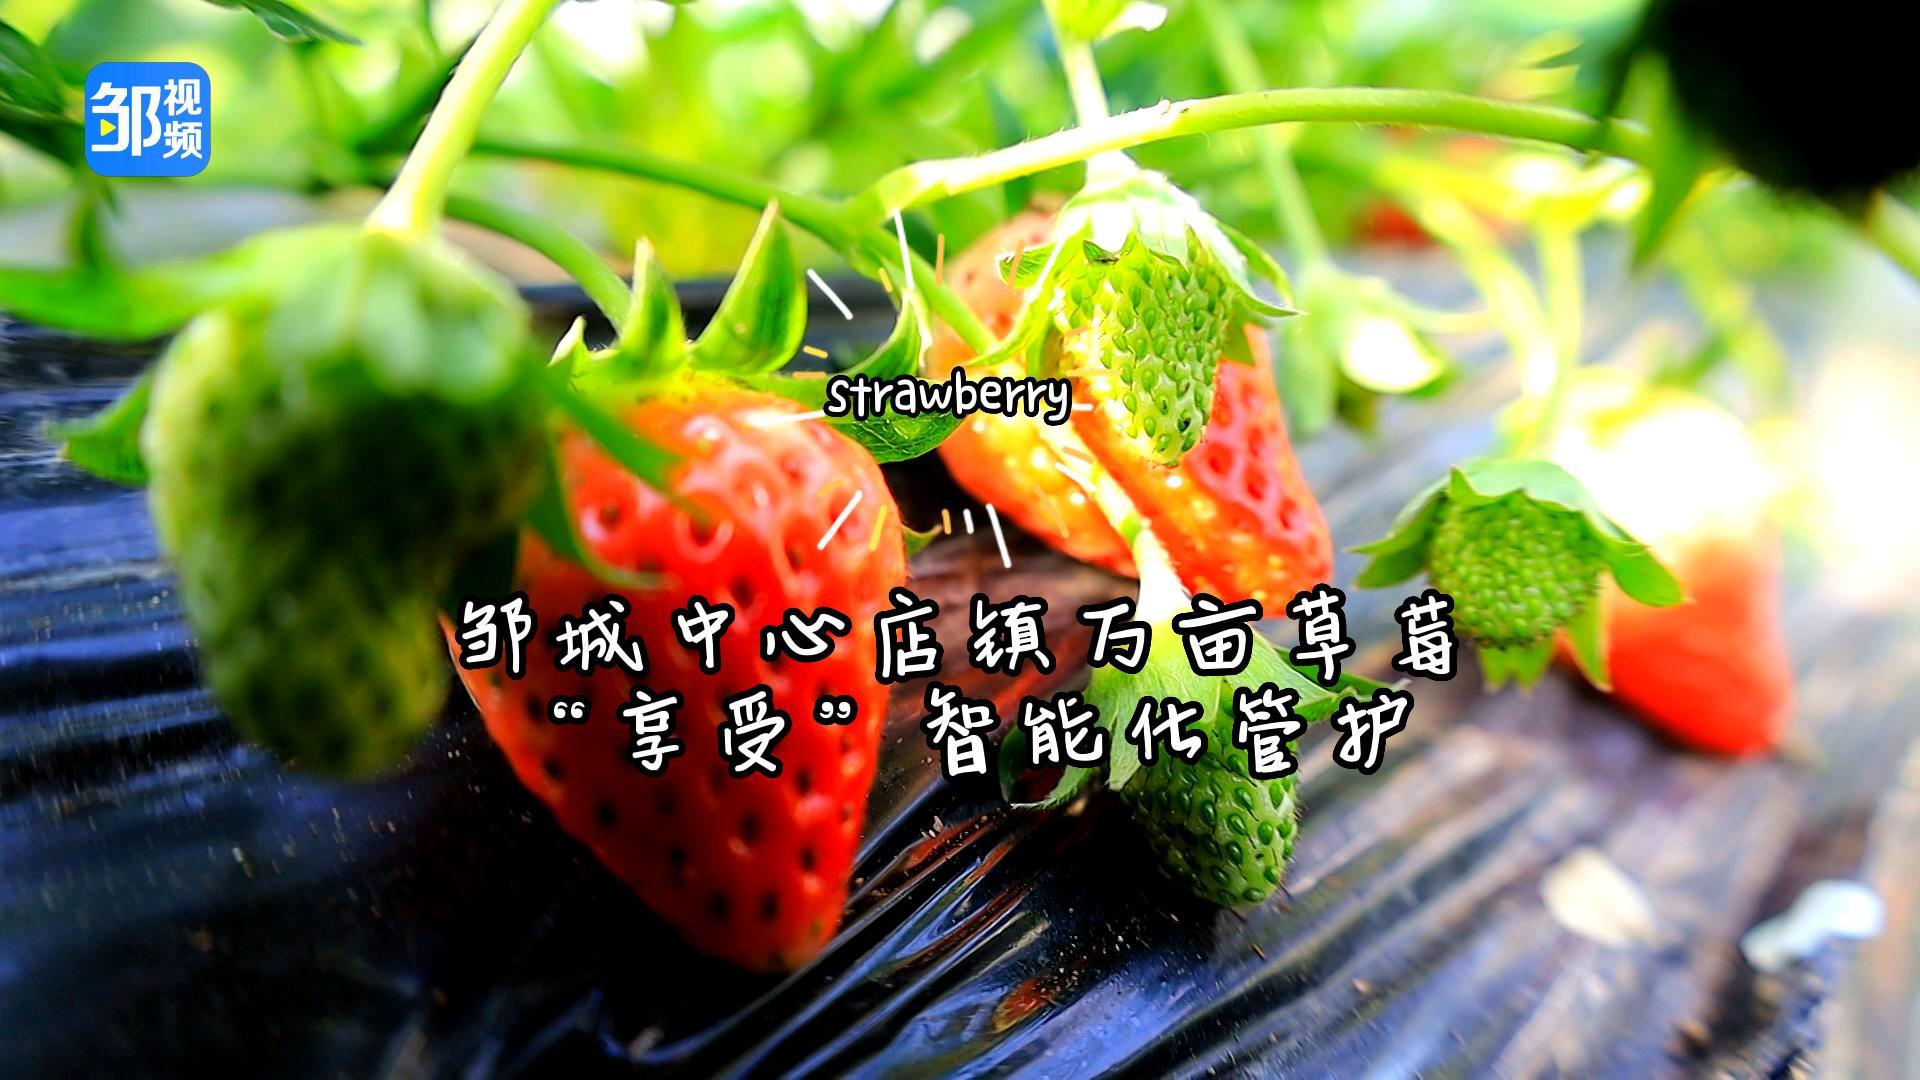 【邹视频·新闻】46秒|邹城中心店镇万亩草莓“享受”智能化管护